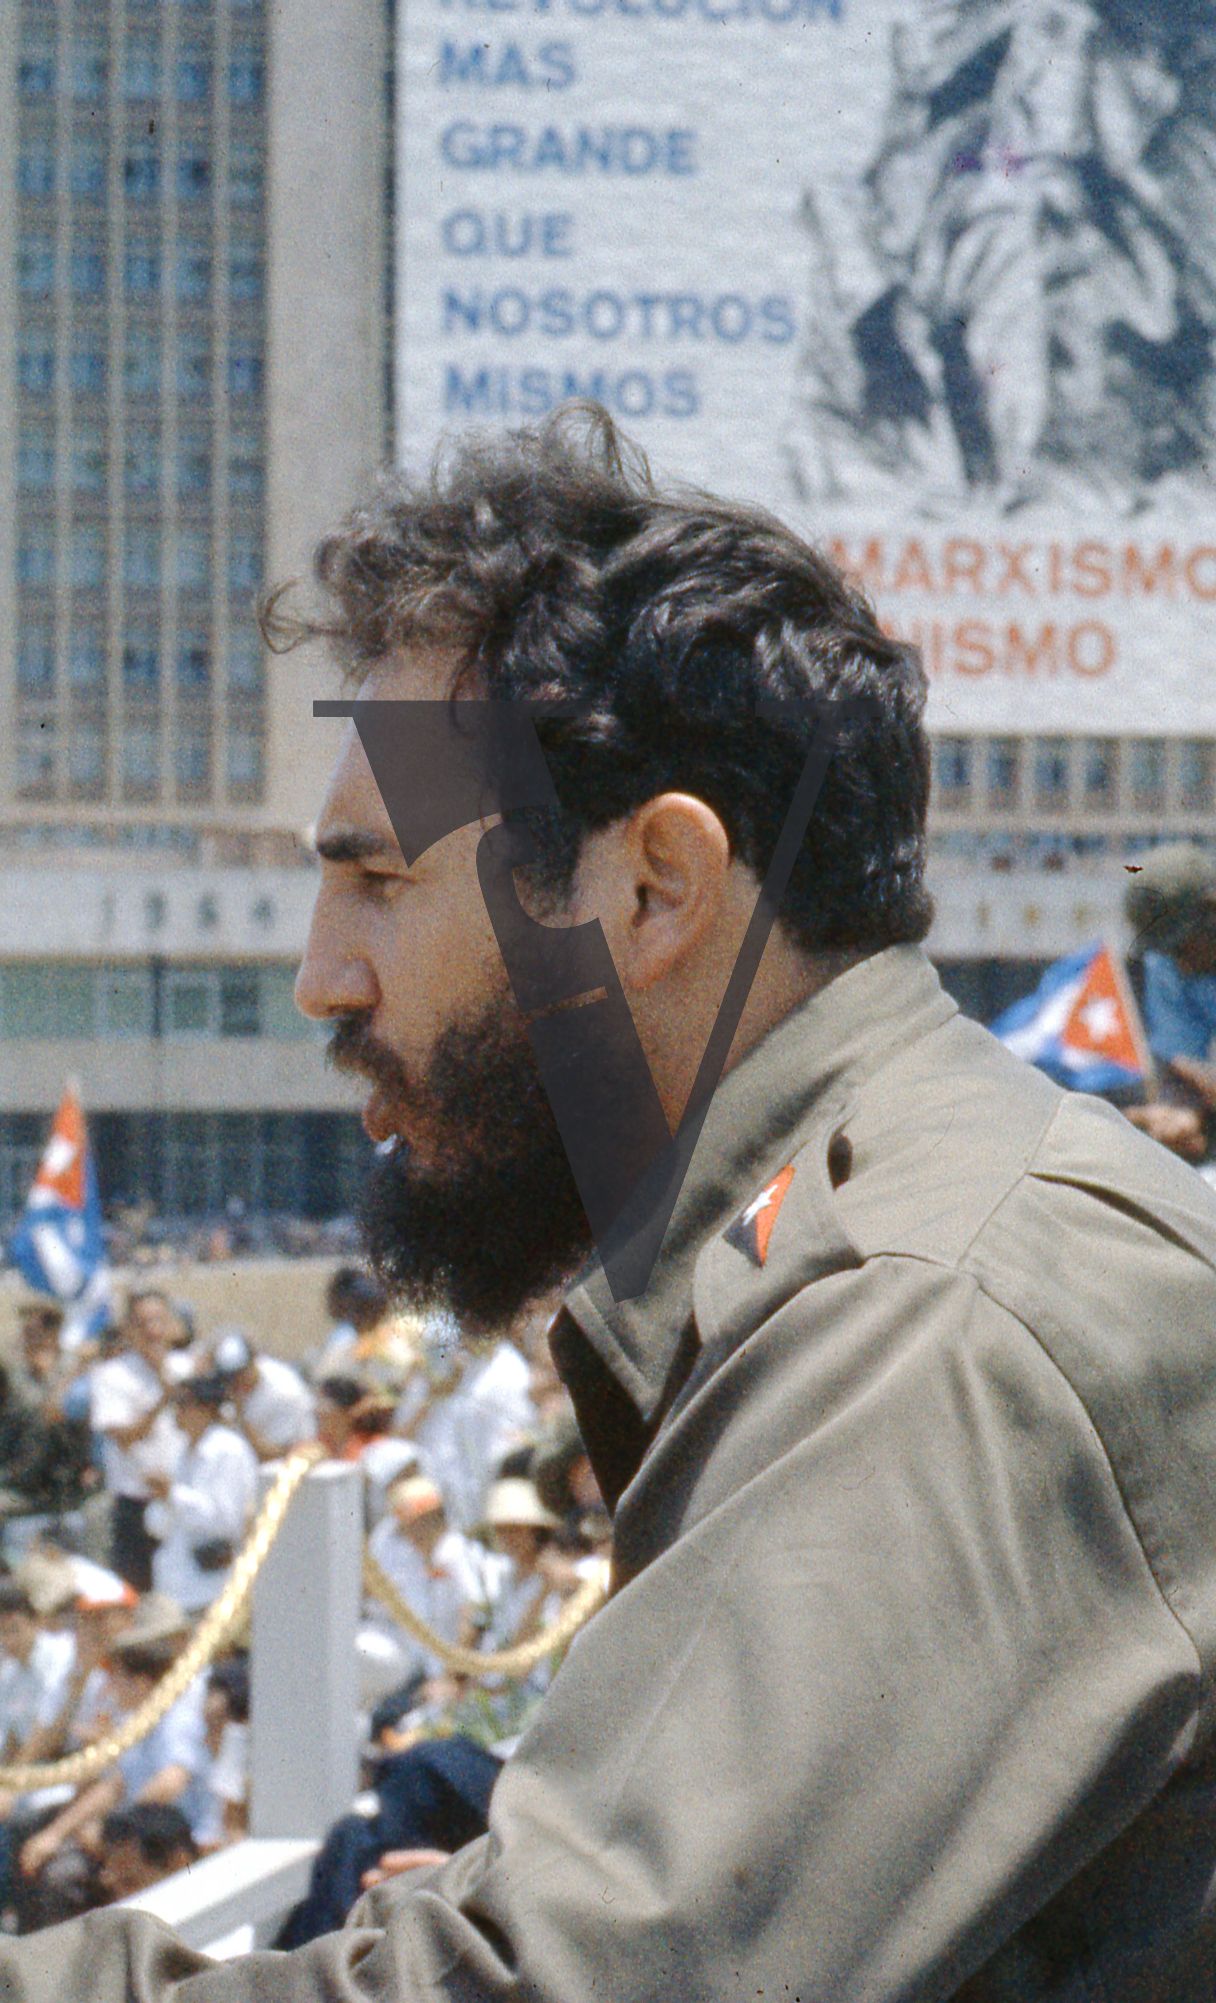 Cuba, Havana, Fidel Castro speech, close-up.